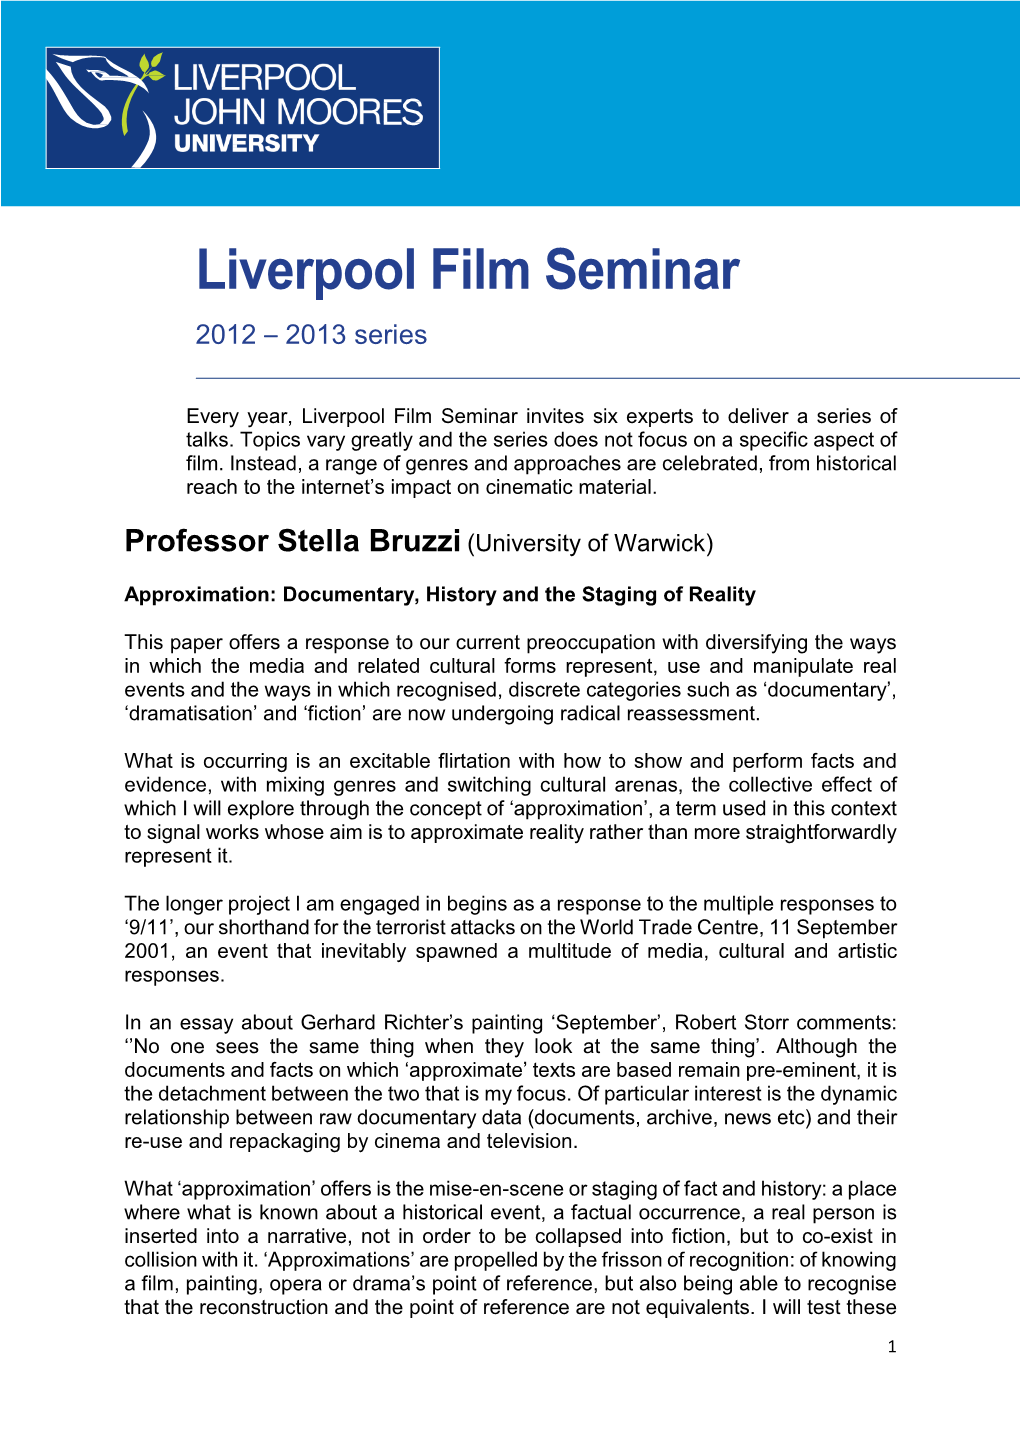 Liverpool Film Seminar 2012 – 2013 Series